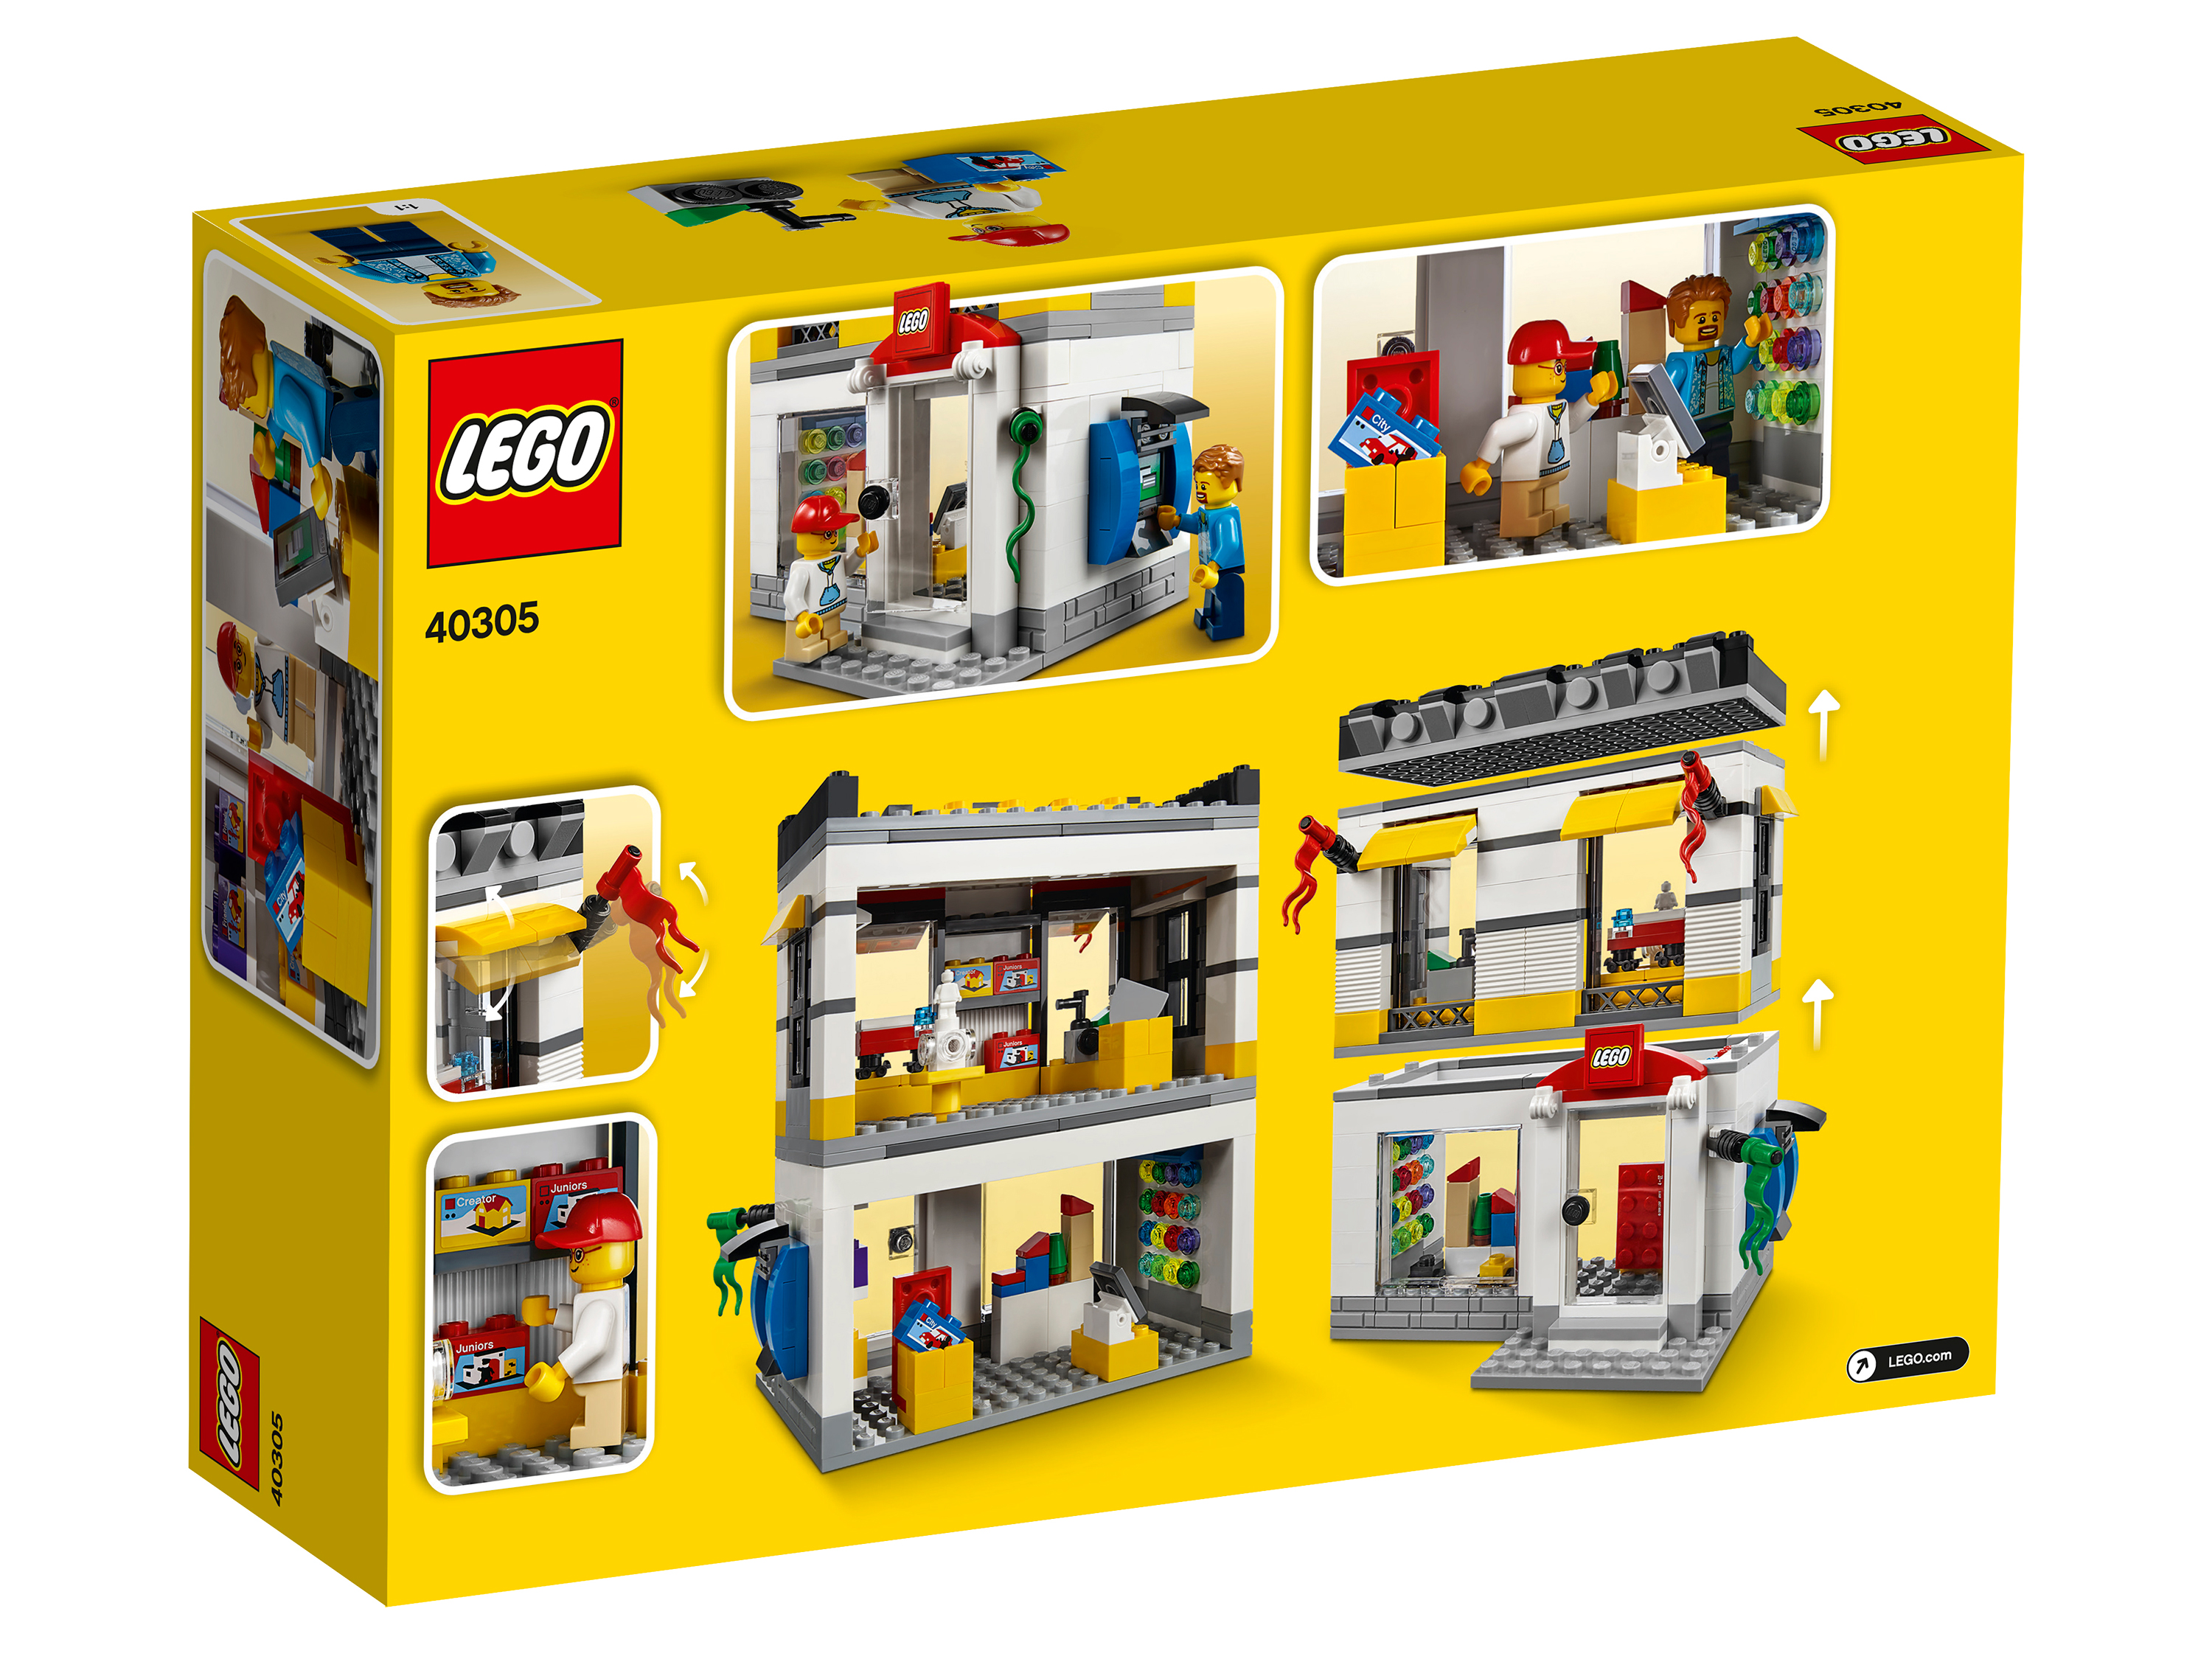 Конструктор LEGO Creator 40305 Мини-модель магазина